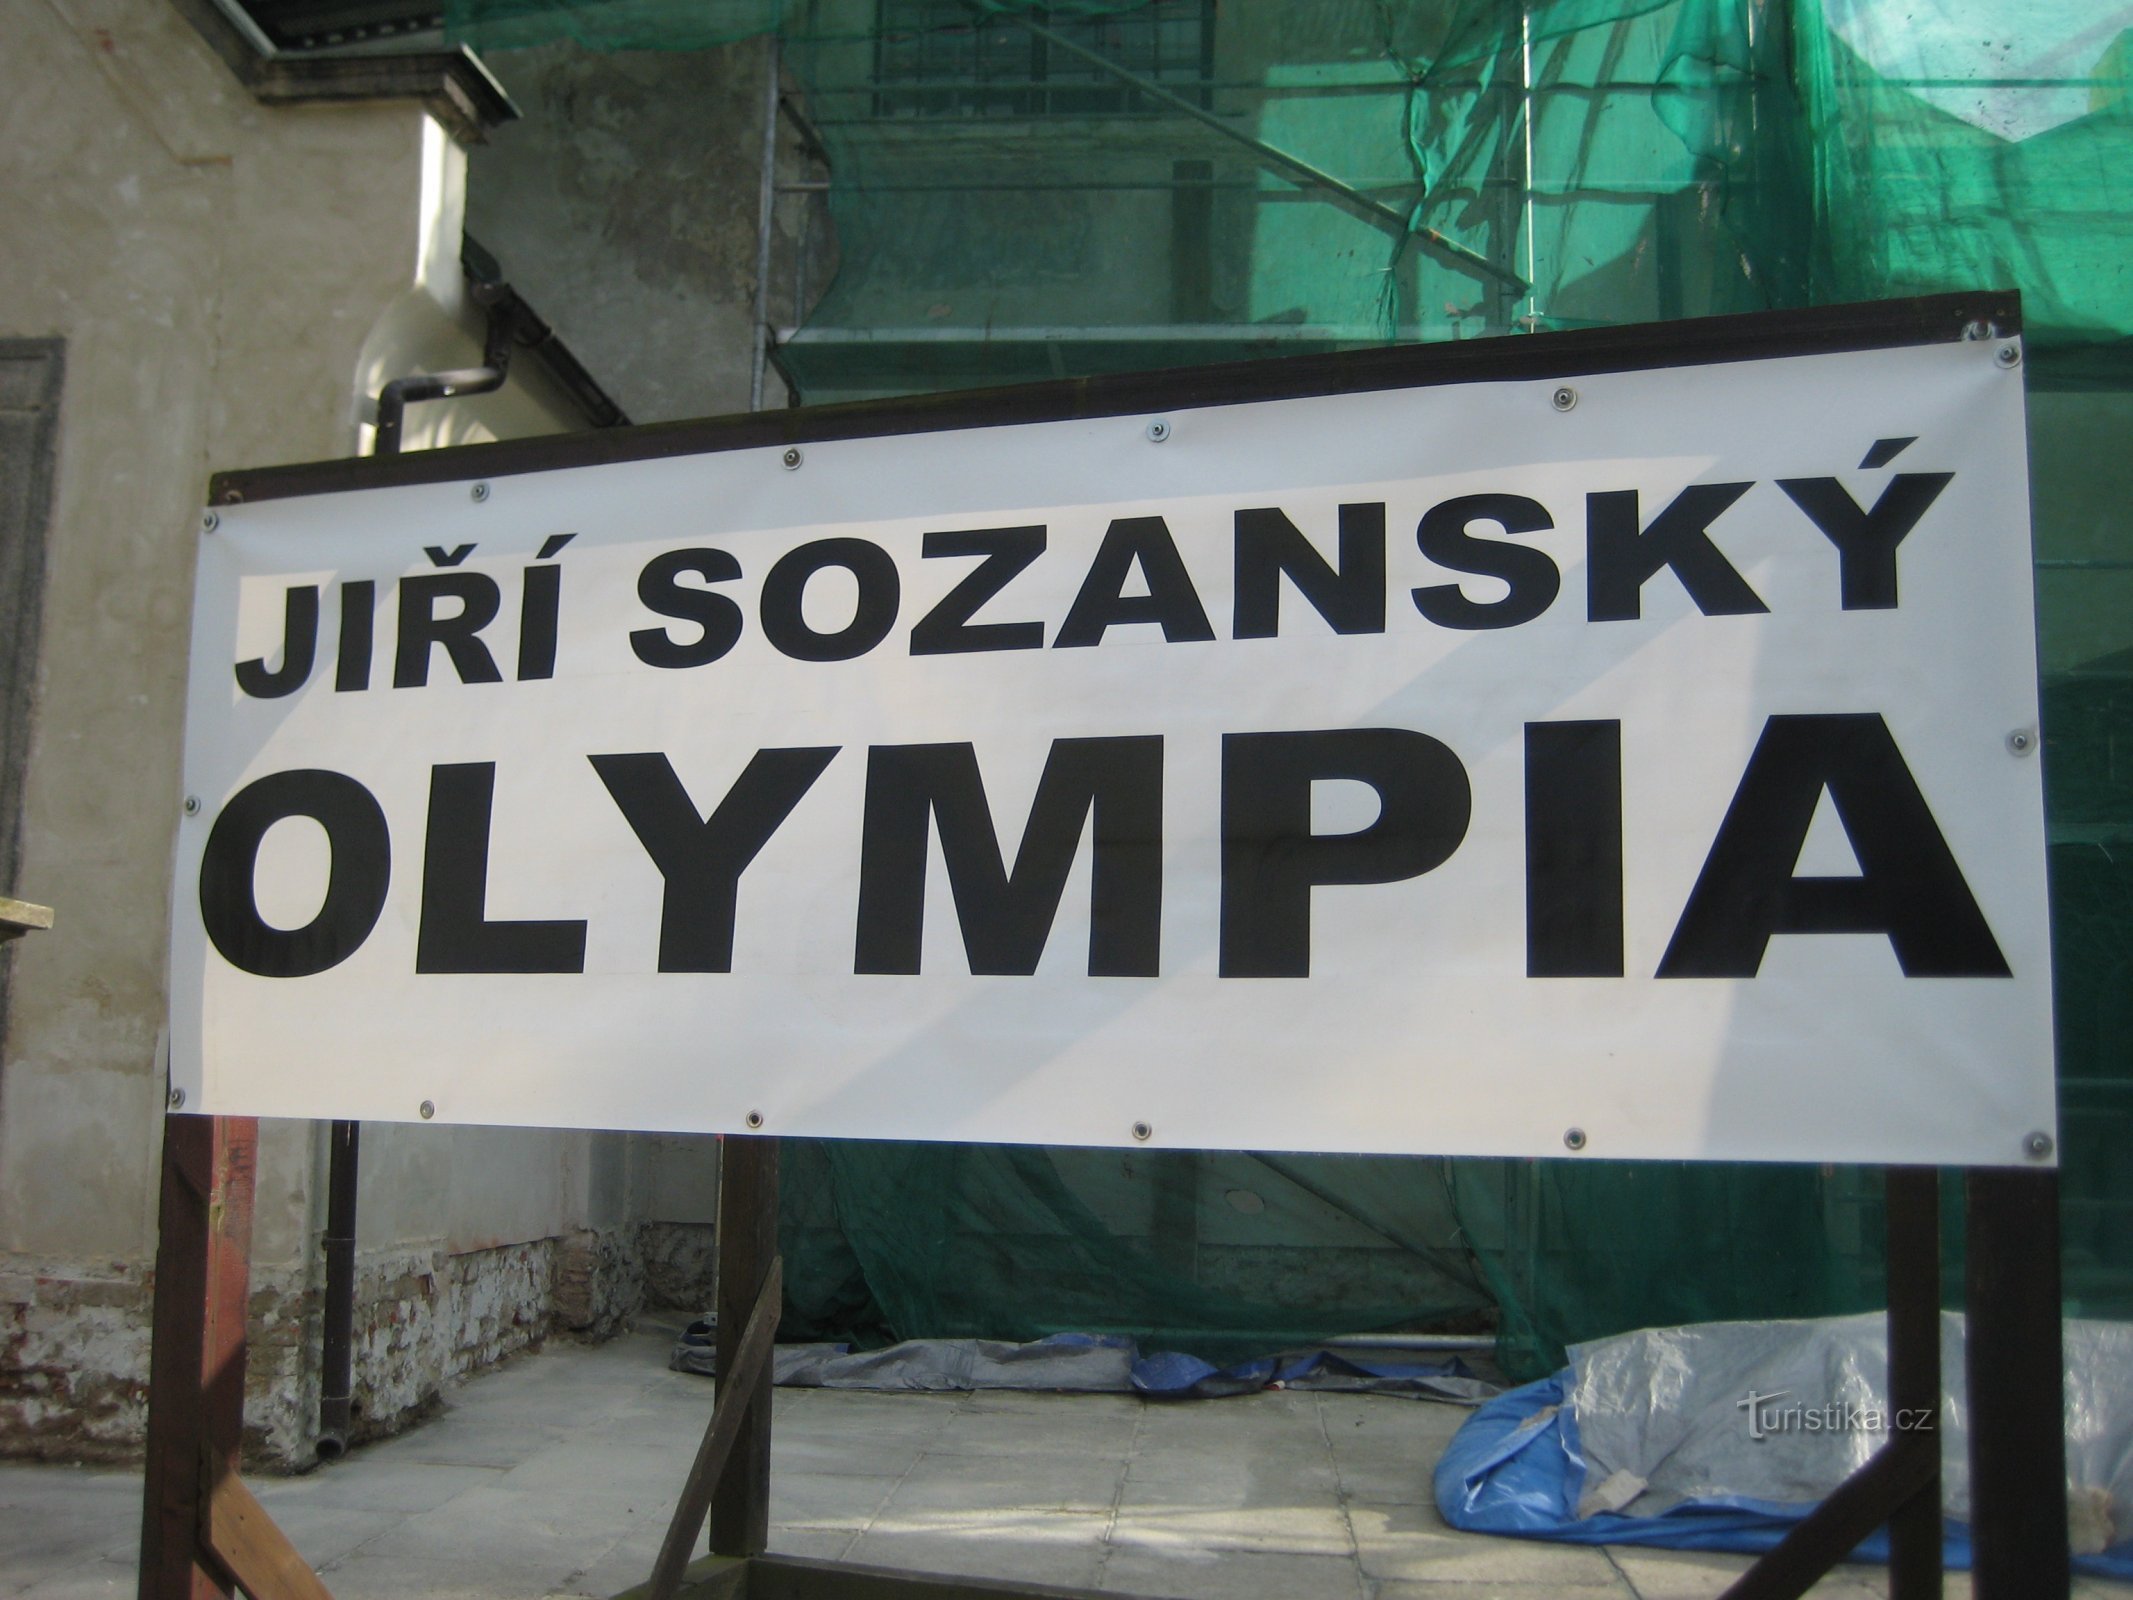 Expoziție Jiří Sozanský - Olympia - Sokolov